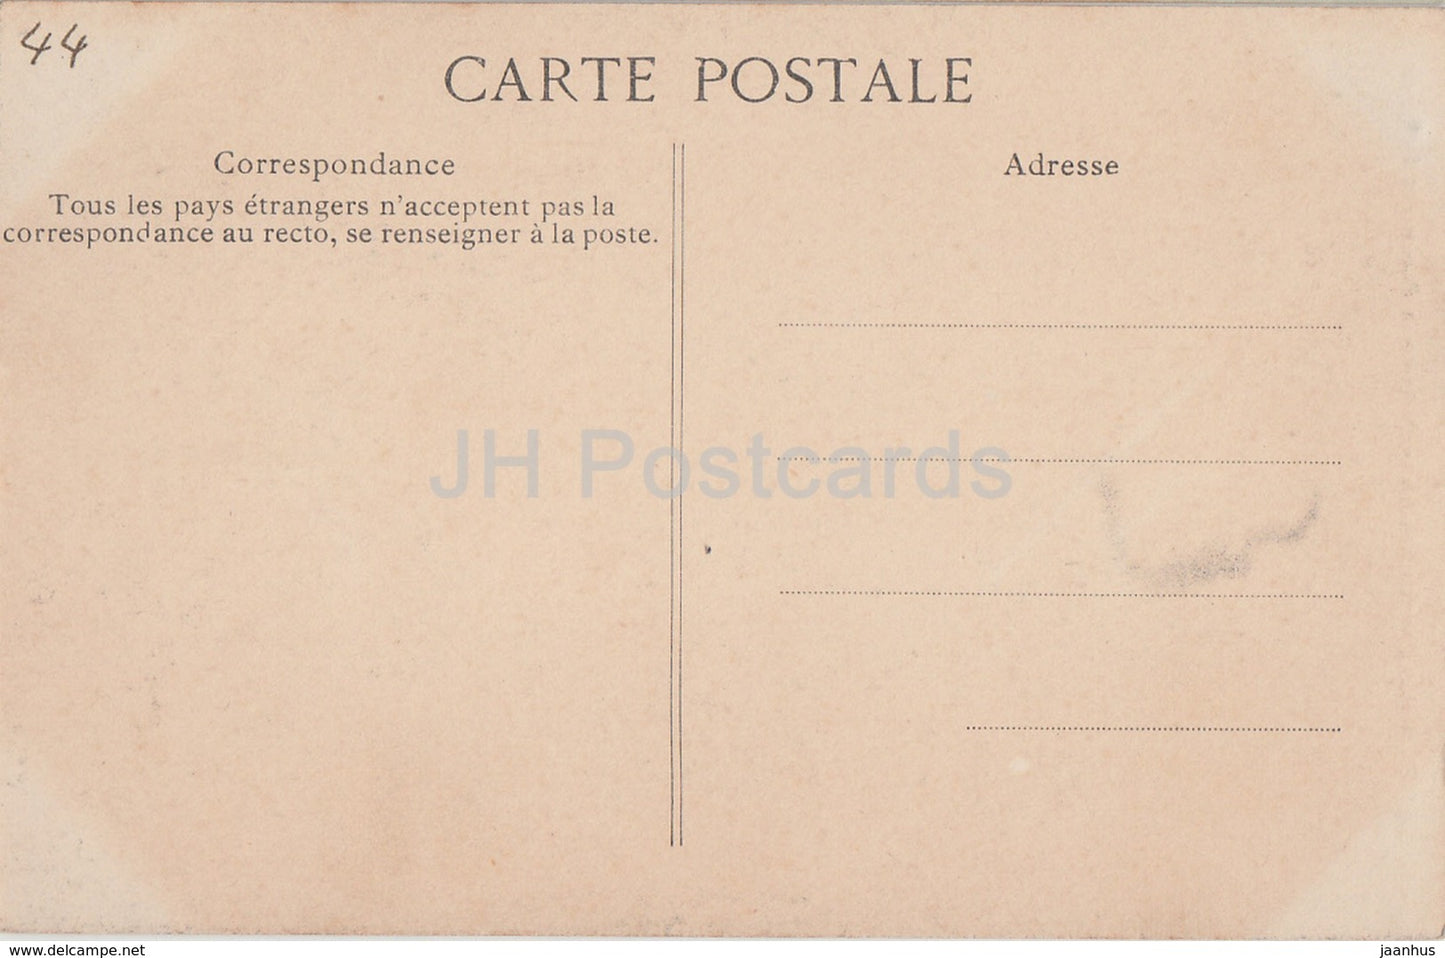 Clisson - Le Chateau - Porte de la Prison des Hommes - prison - castle - old postcard - France - unused